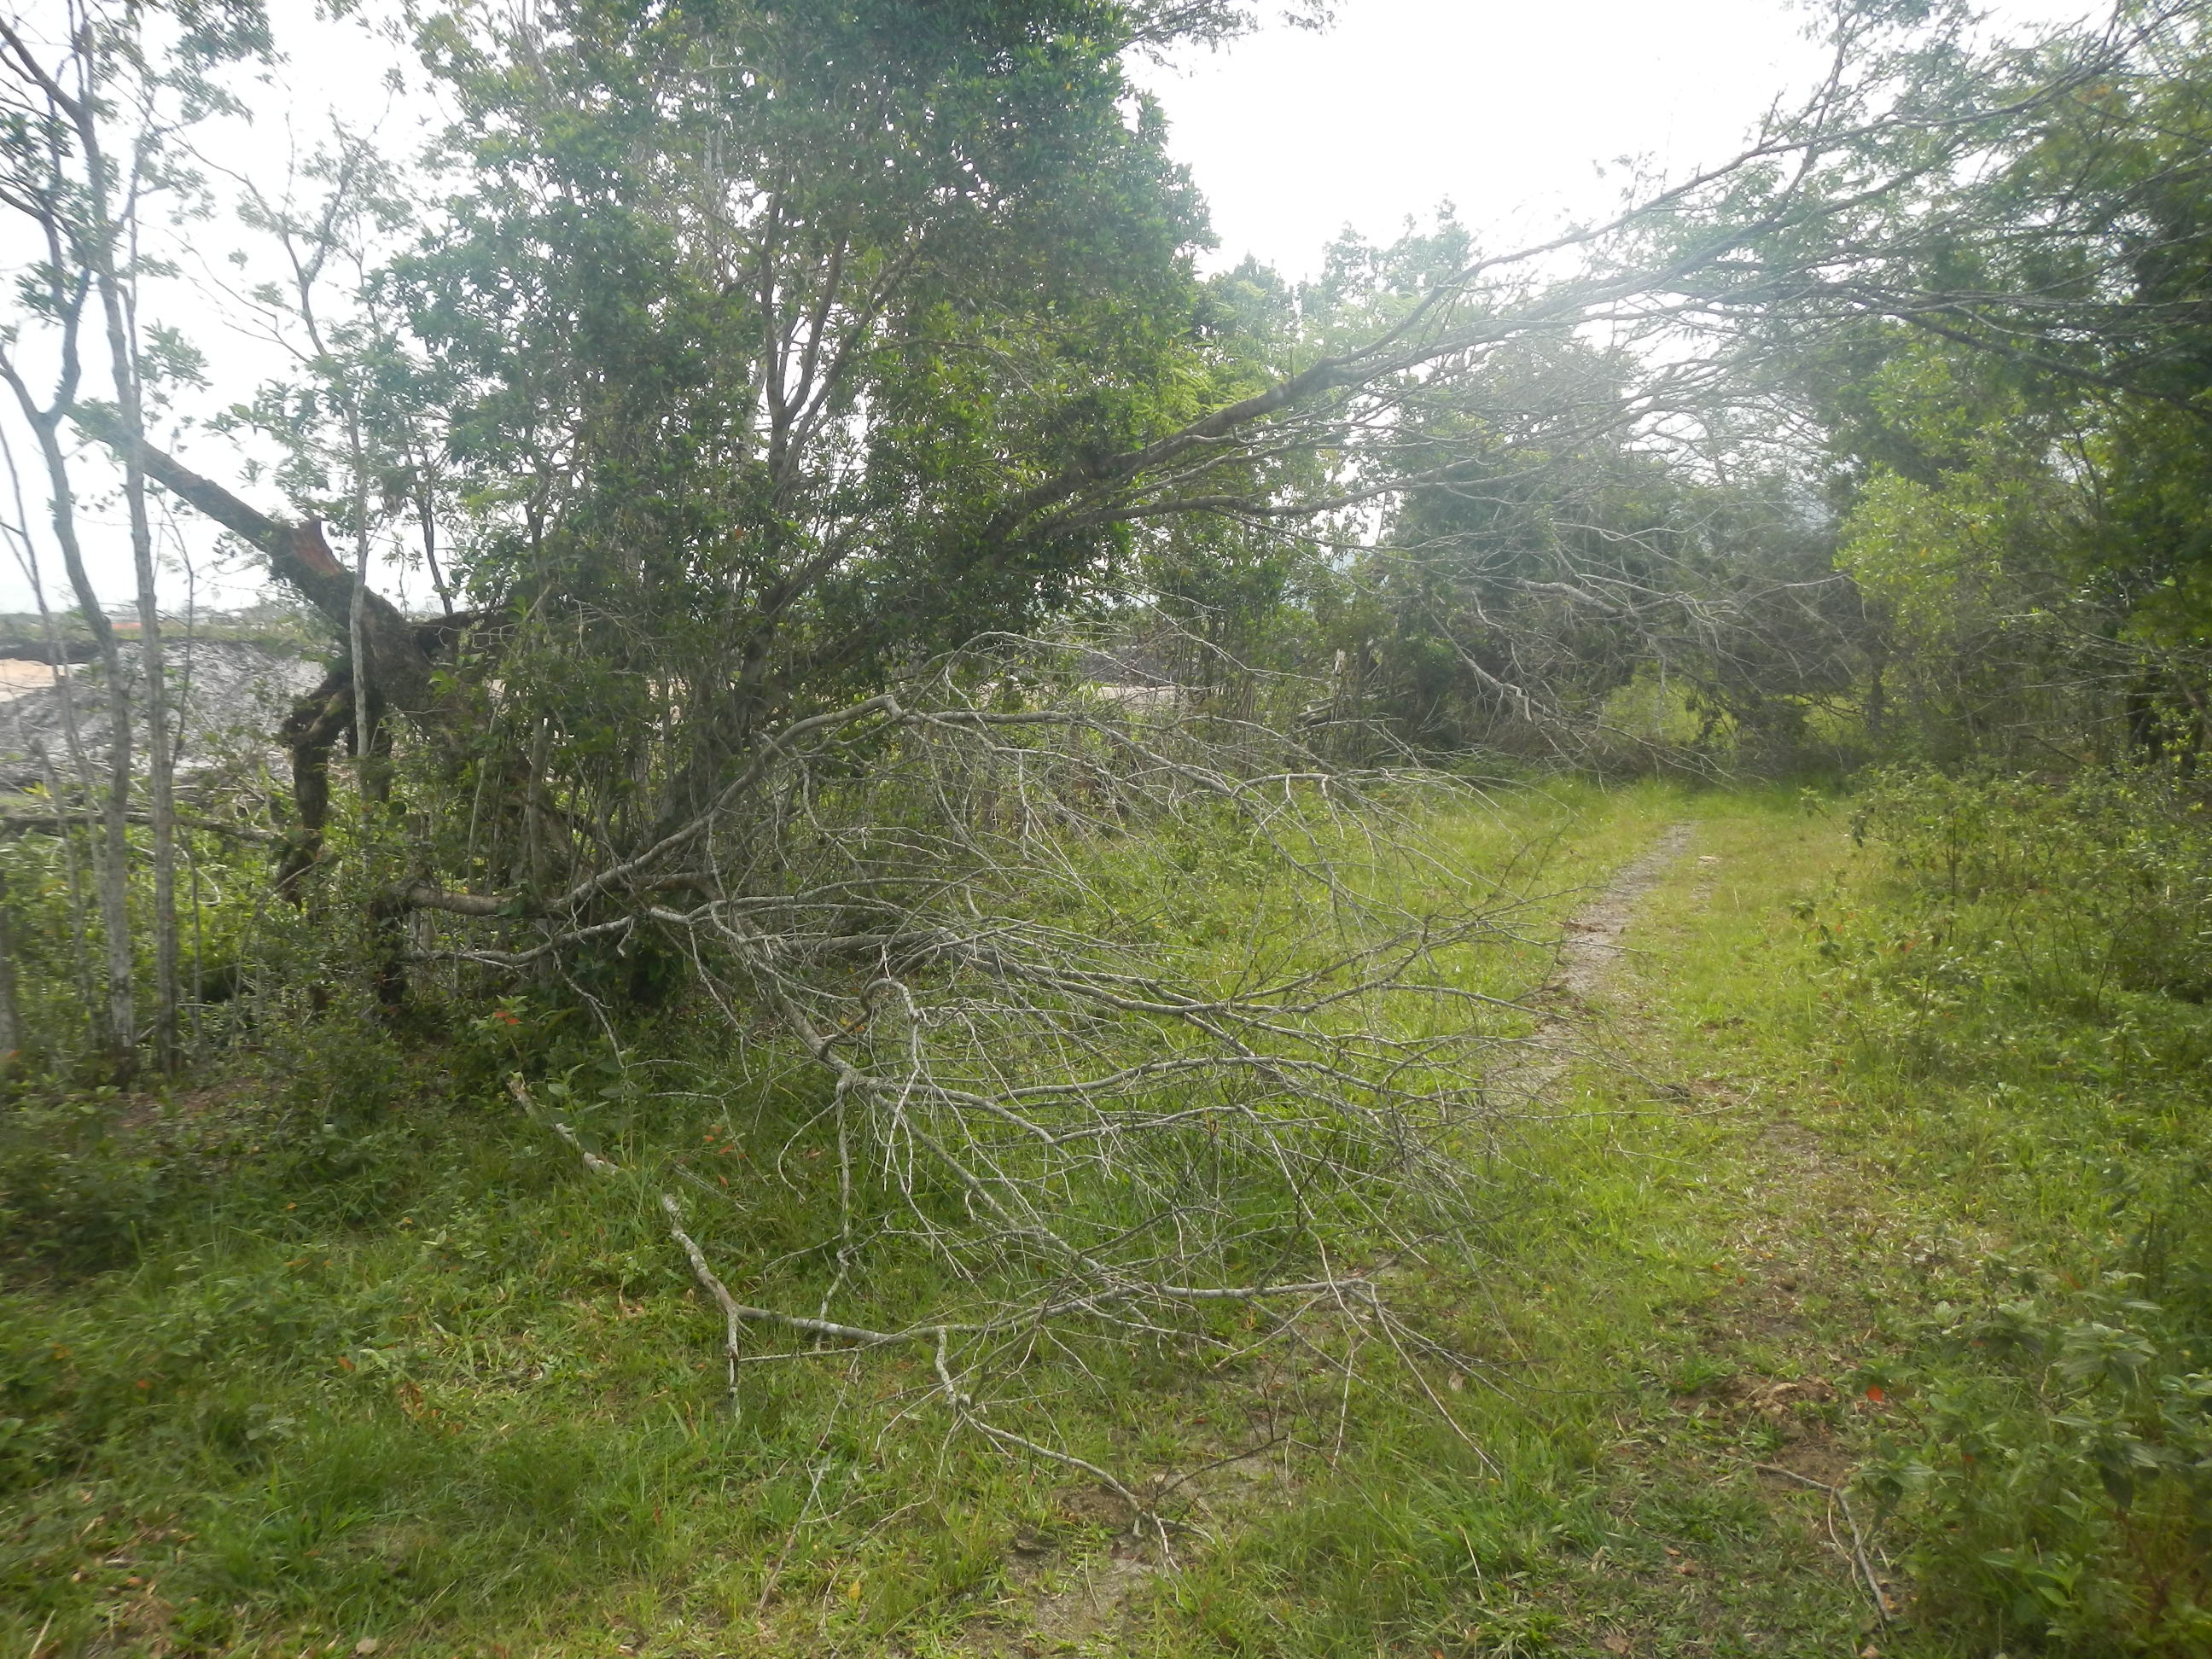 20130424 Fazenda árvores derrubadas por vendaval vento estrada 007.jpg